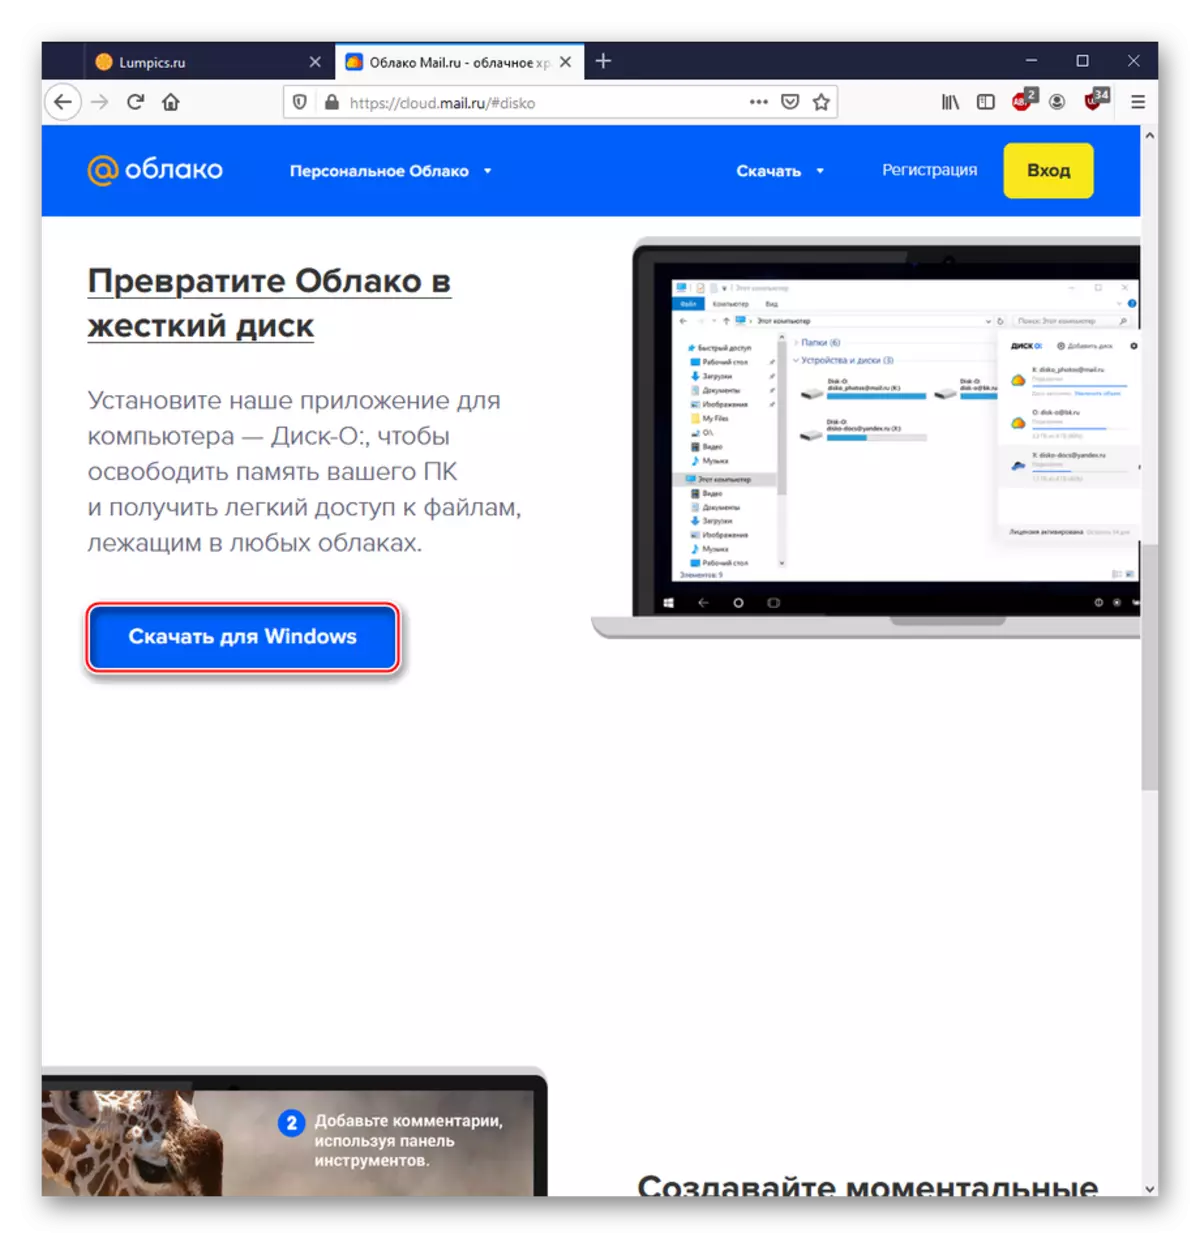 Shkarkimi i një programi PC për të punuar me shërbimin cloud@mail.ru